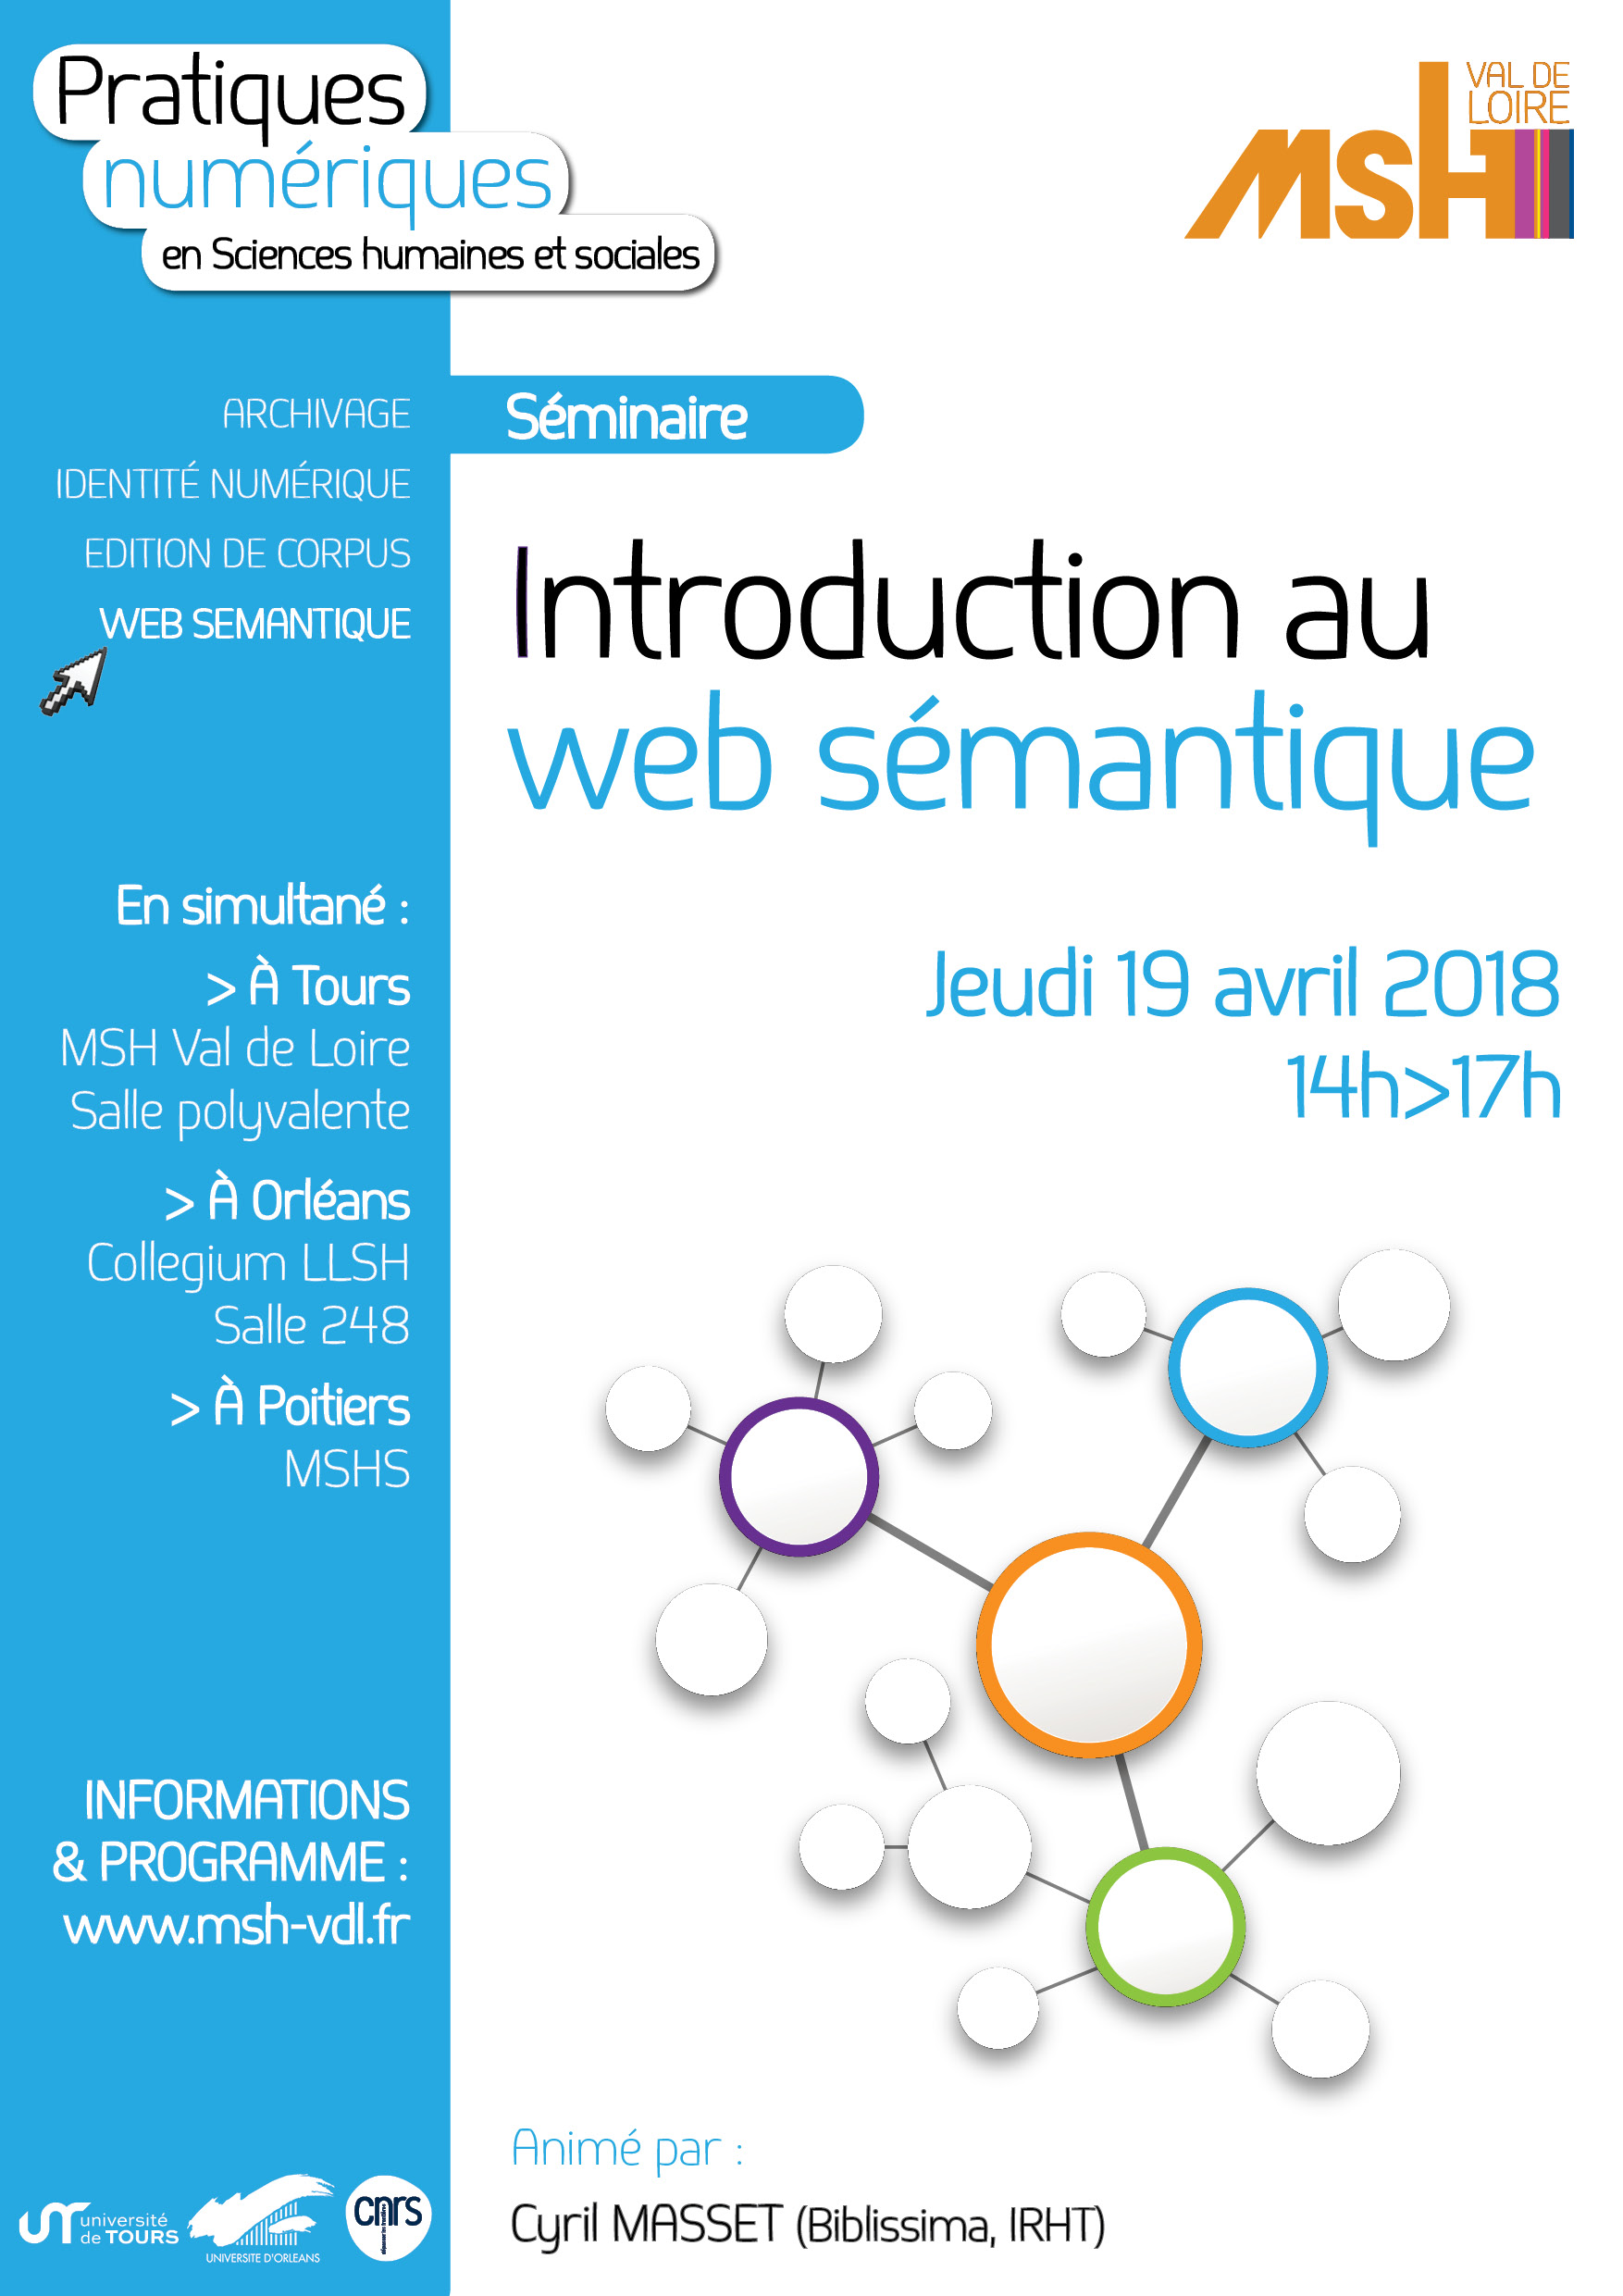 Introduction au web sémantique